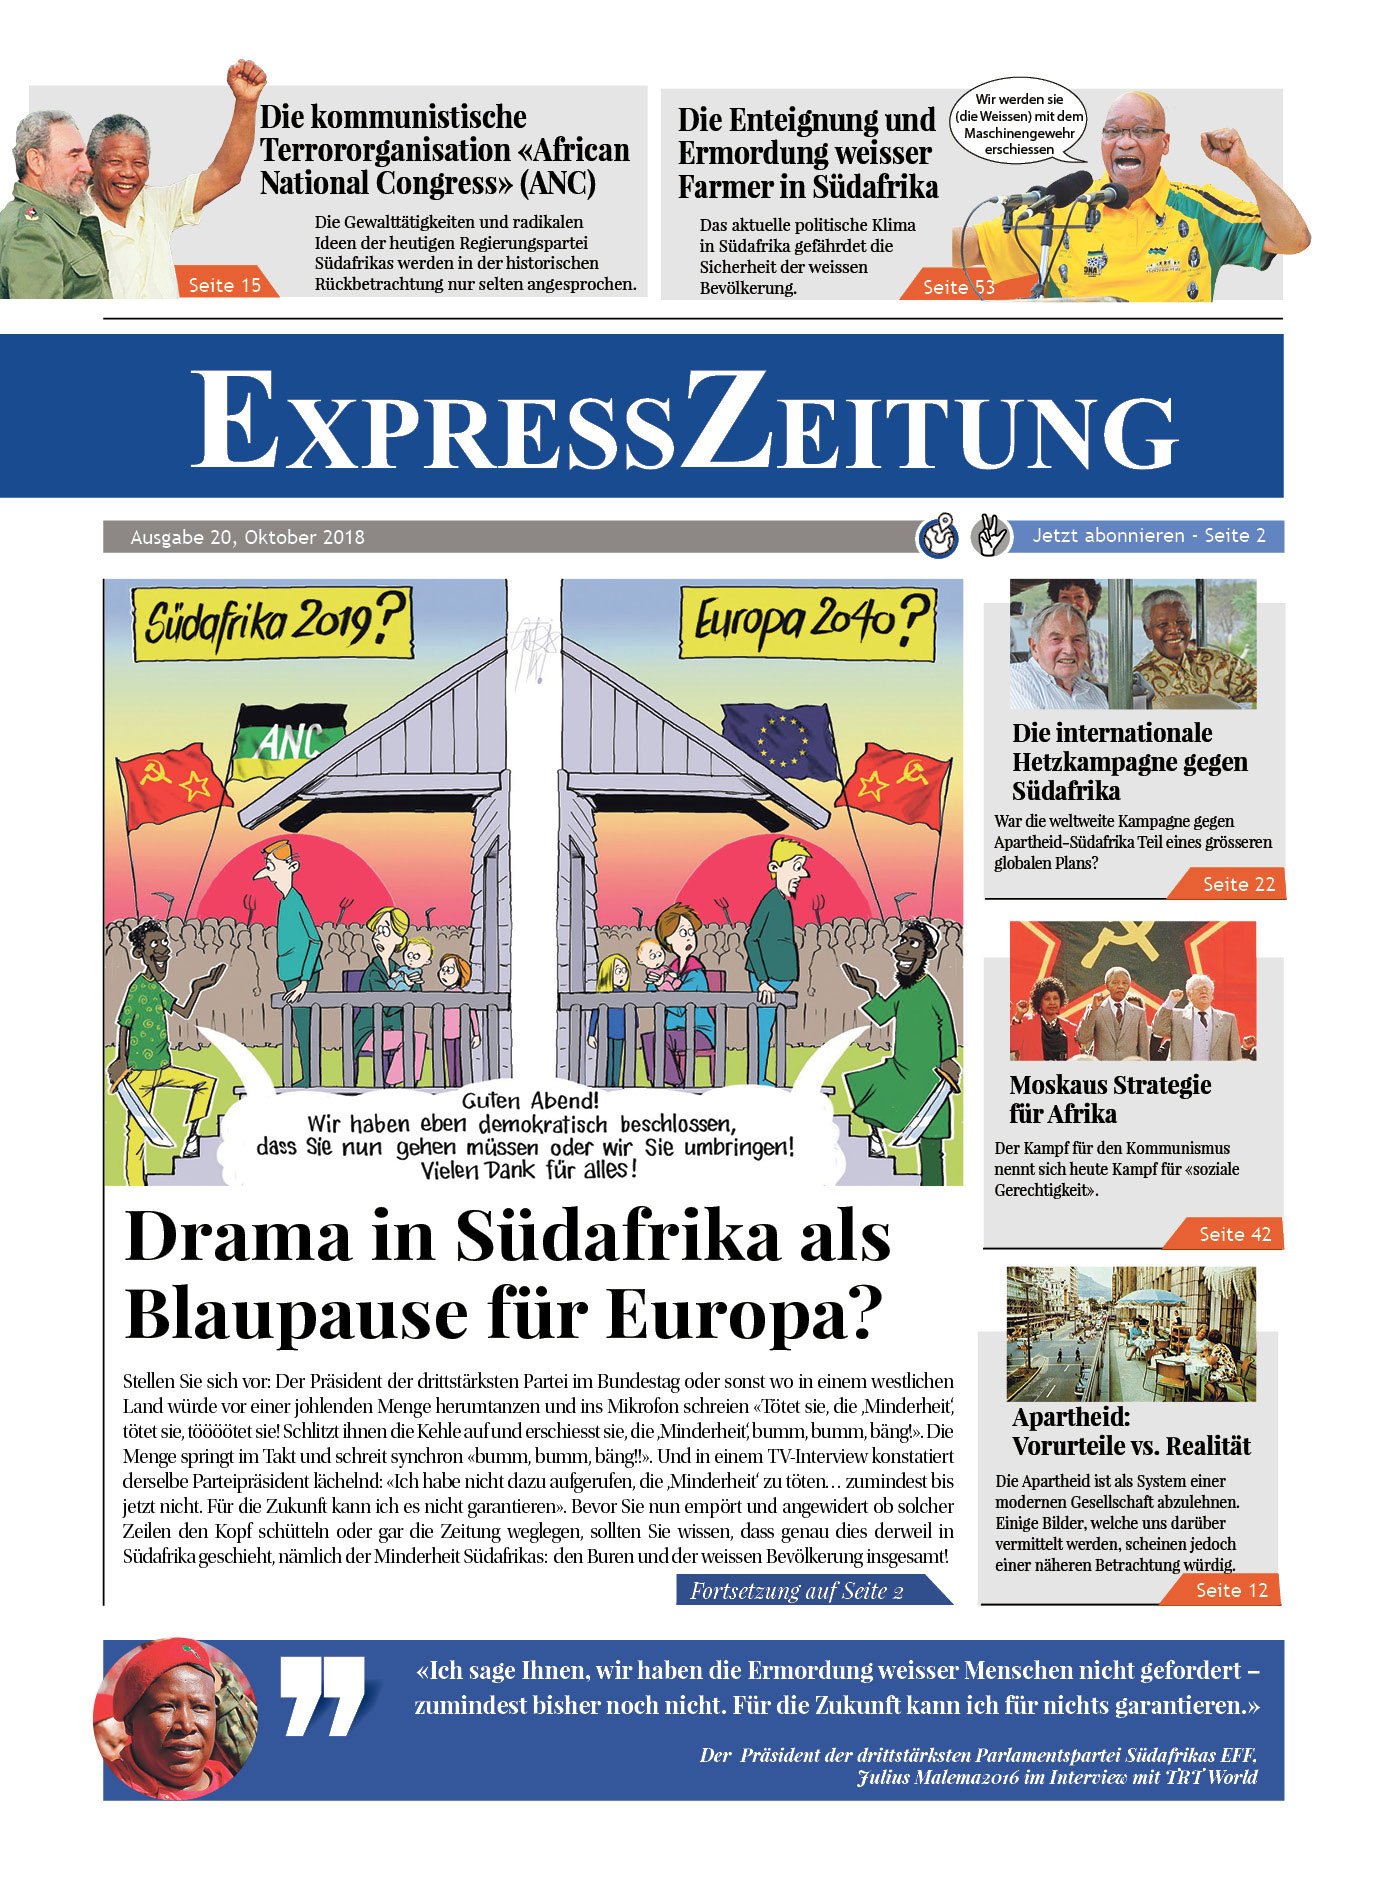 Ausgabe 20: Drama in Südafrika als Blaupause für Europa?